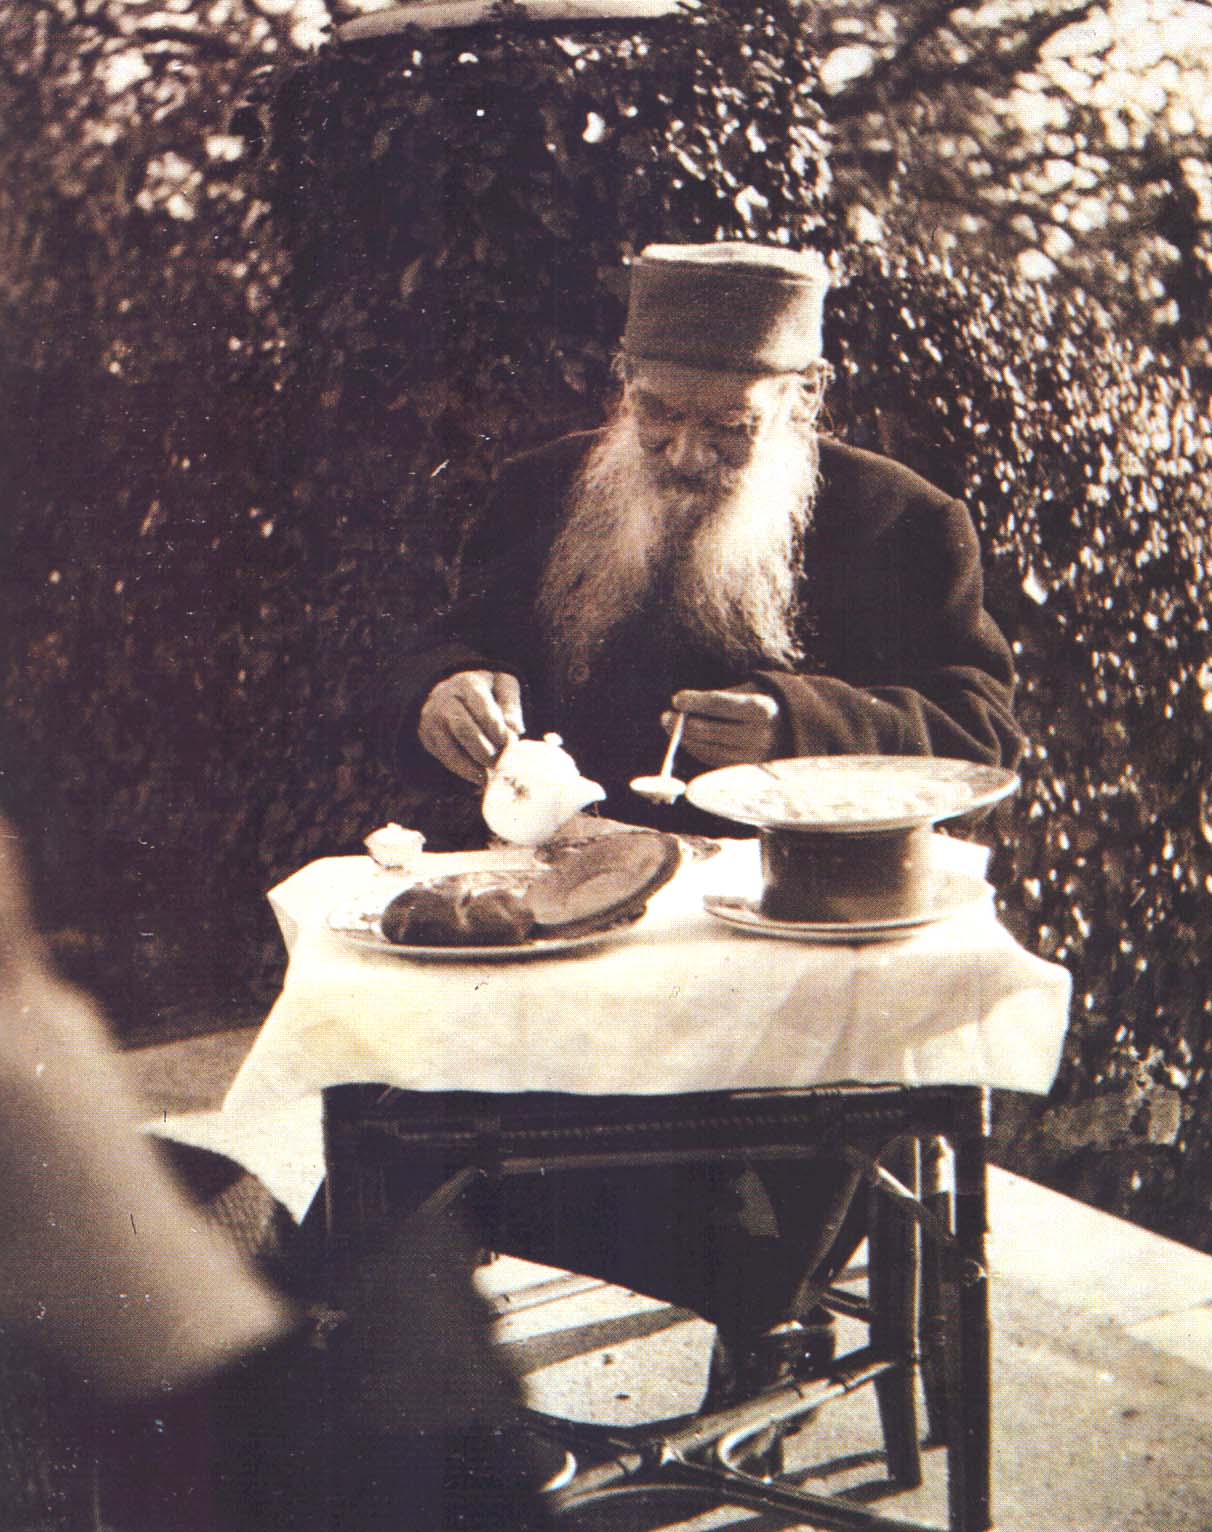 Л.Н. Толстой завтракает на террасе дома в Гаспре. Фотография А.Л. Толстой. 1901 г.